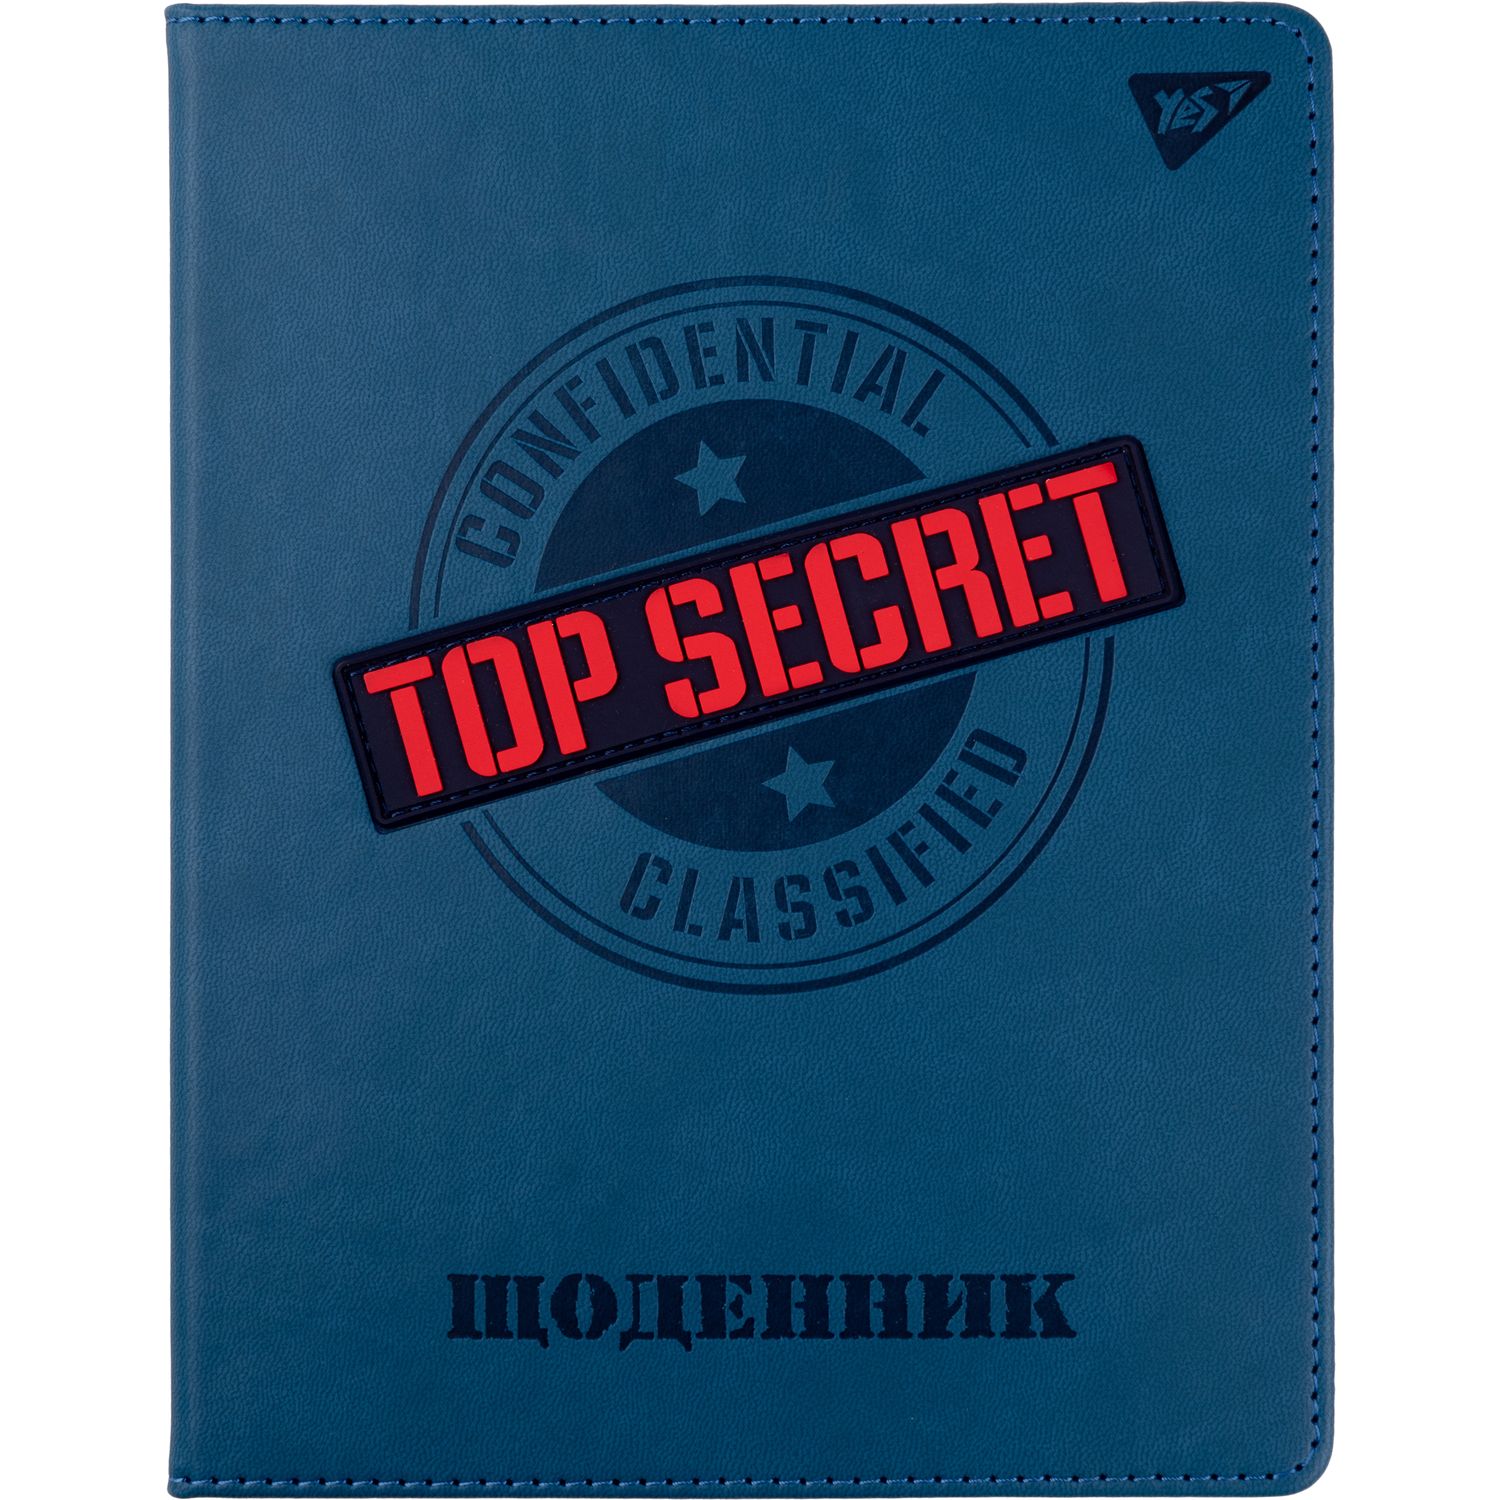 Дневник школьный Yes PU твердый Top secret, тиснение, объемный бейдж (911406) - фото 1